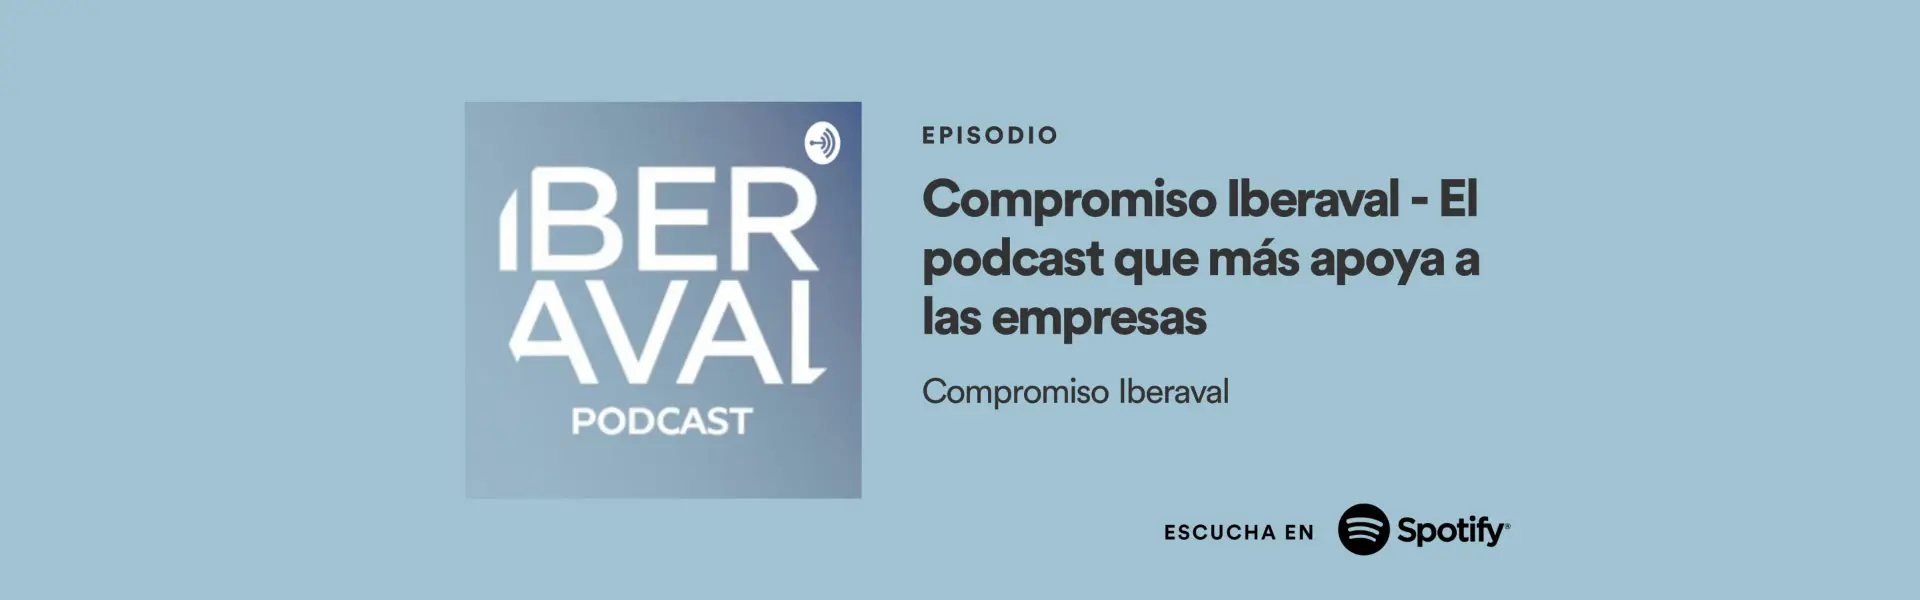 Iberaval lanza el podcast Compromiso Iberaval con el objetivo de acercar su funcion a las empresas y los autonomos Hemeroteca cesgar web